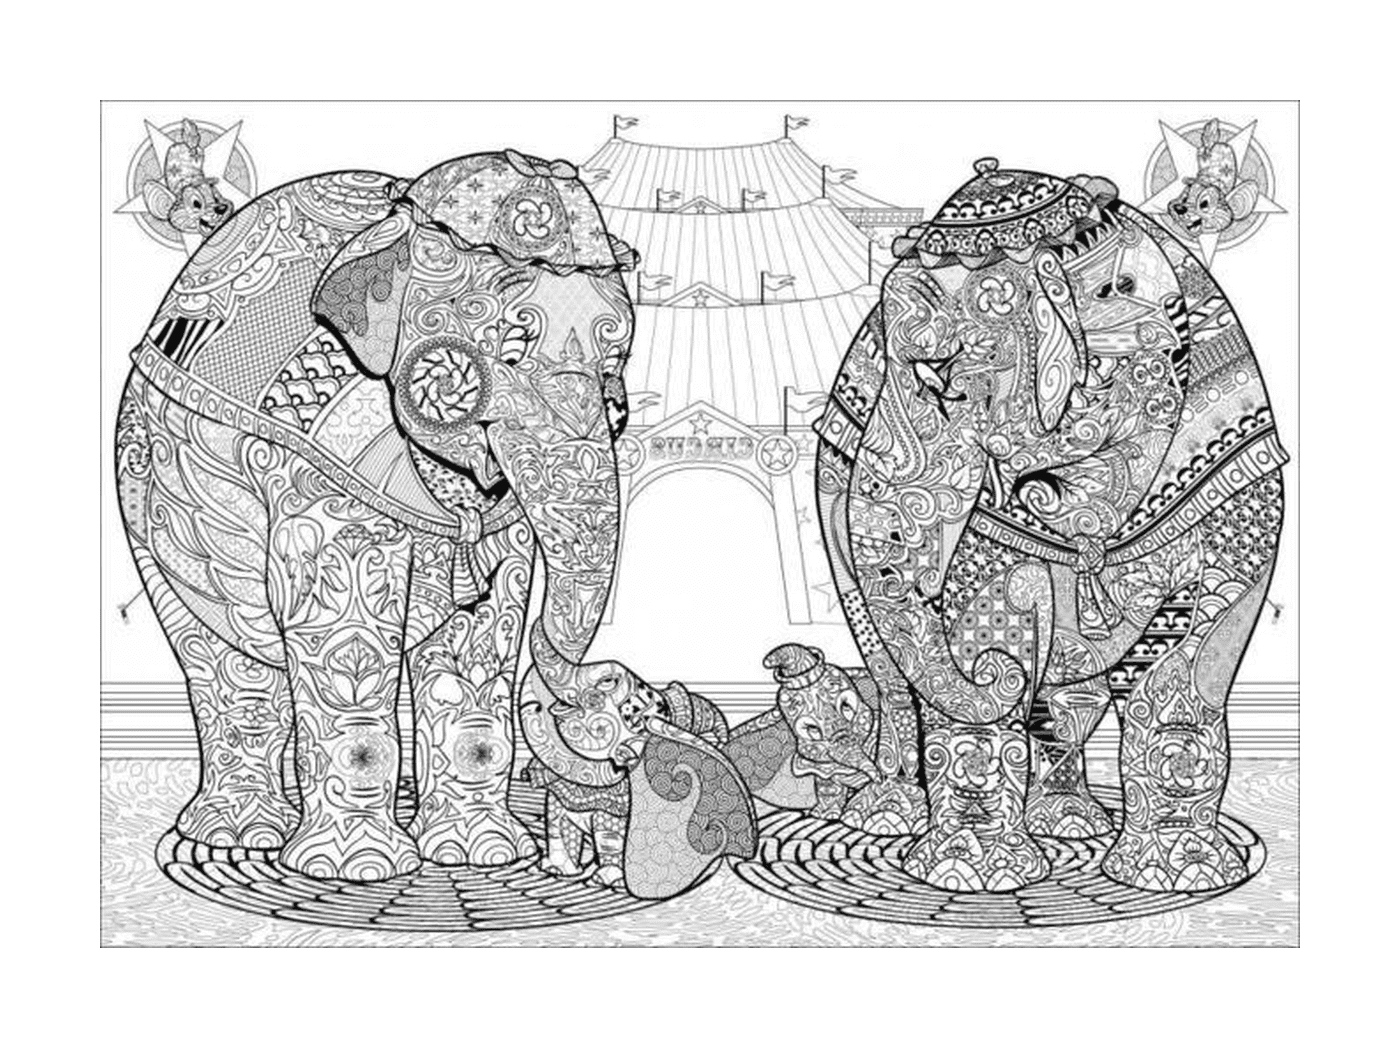  группа слонов, стоящих рядом друг с другом 